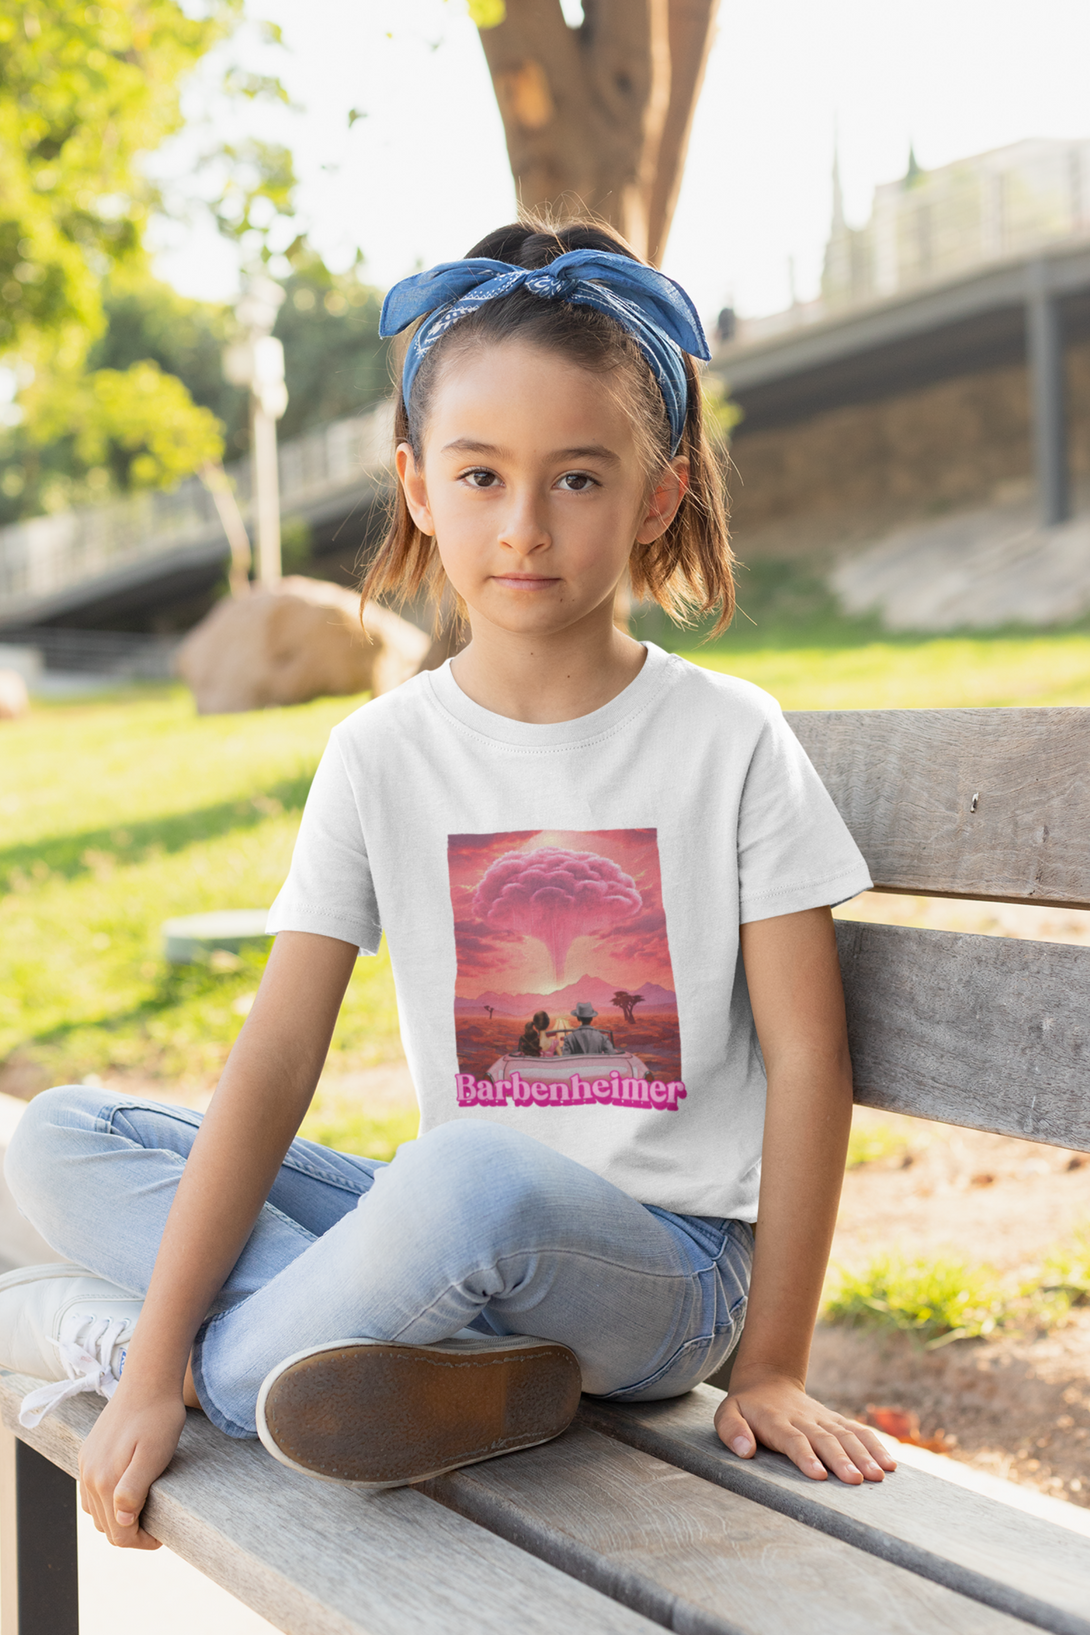 Barbienheimer Printed T-Shirt For Girl - WowWaves - 2